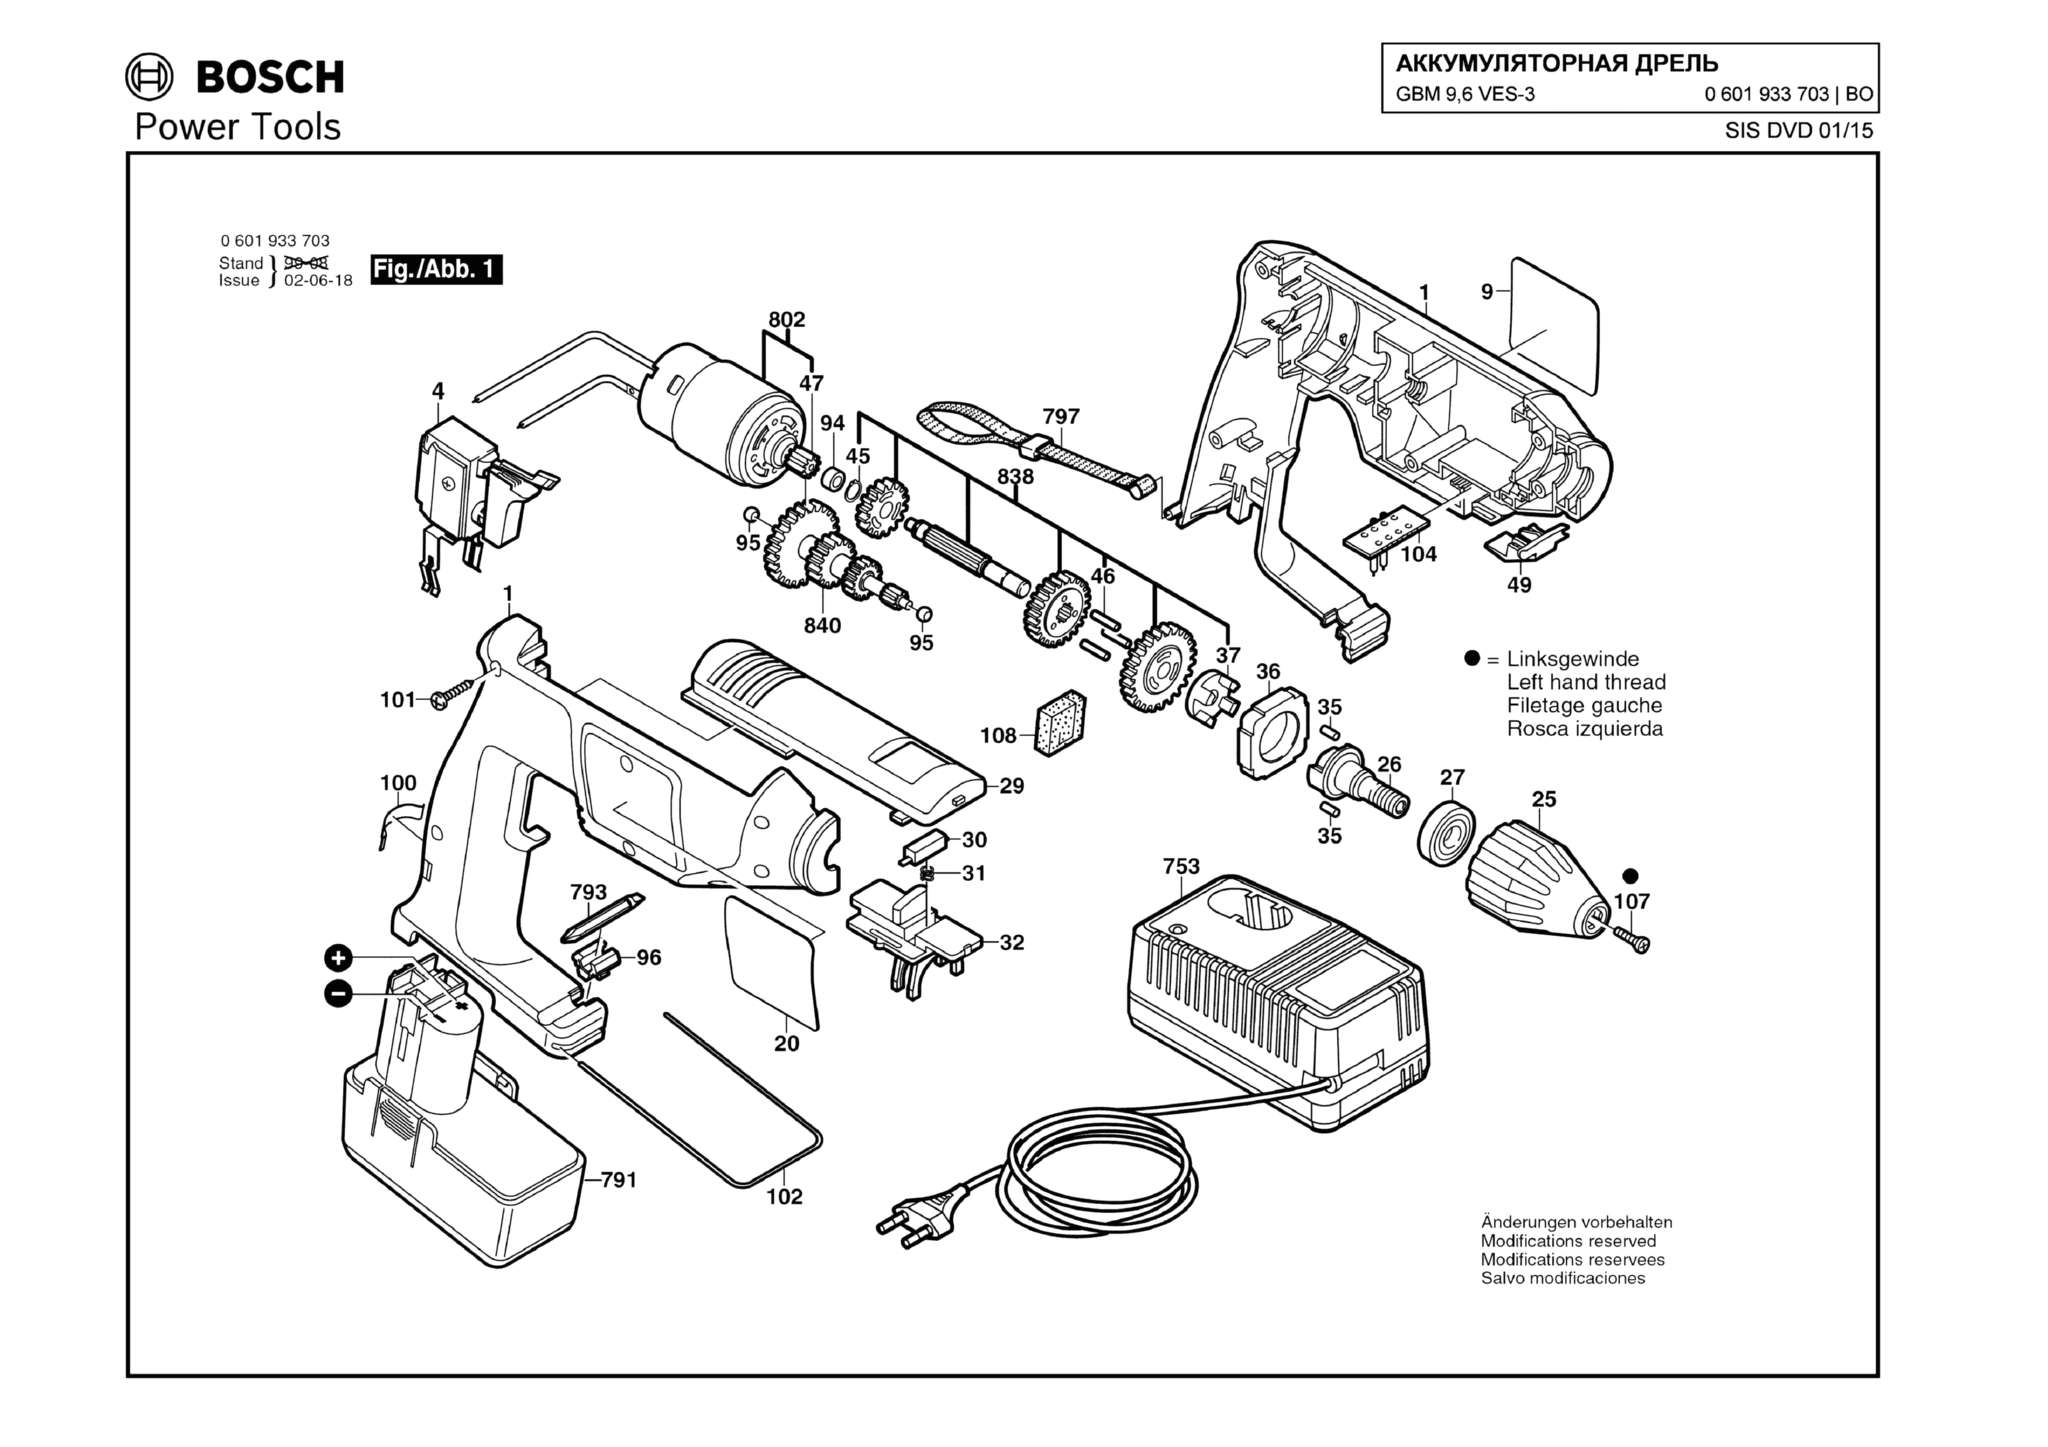 Запчасти, схема и деталировка Bosch GBM 9,6 VES-3 (ТИП 0601933703)